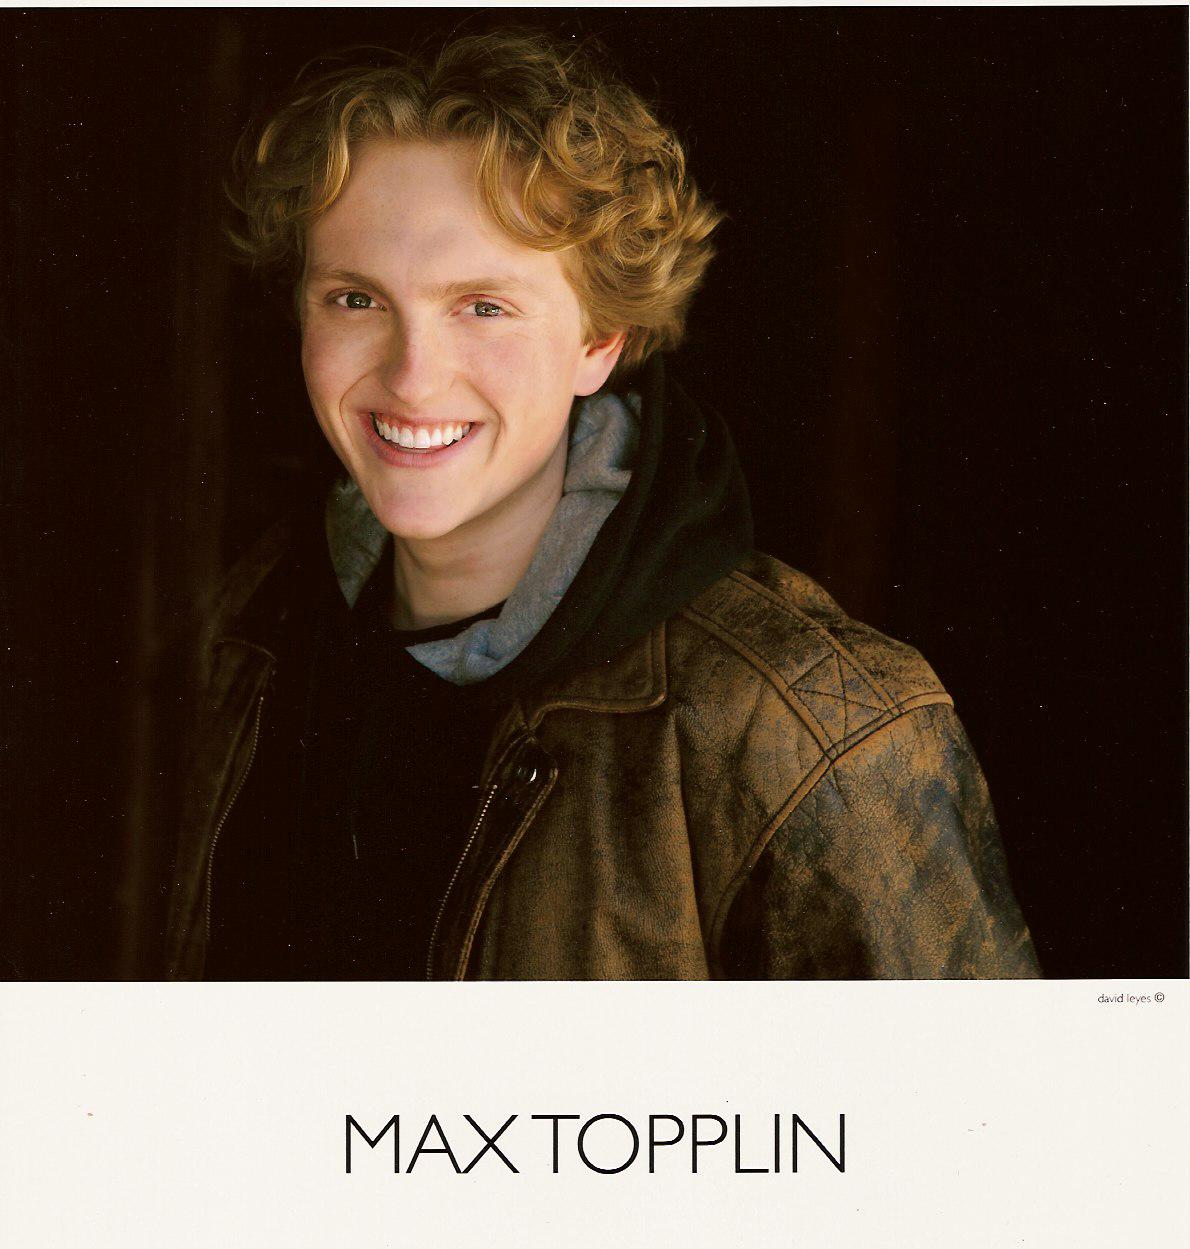 Max Topplin